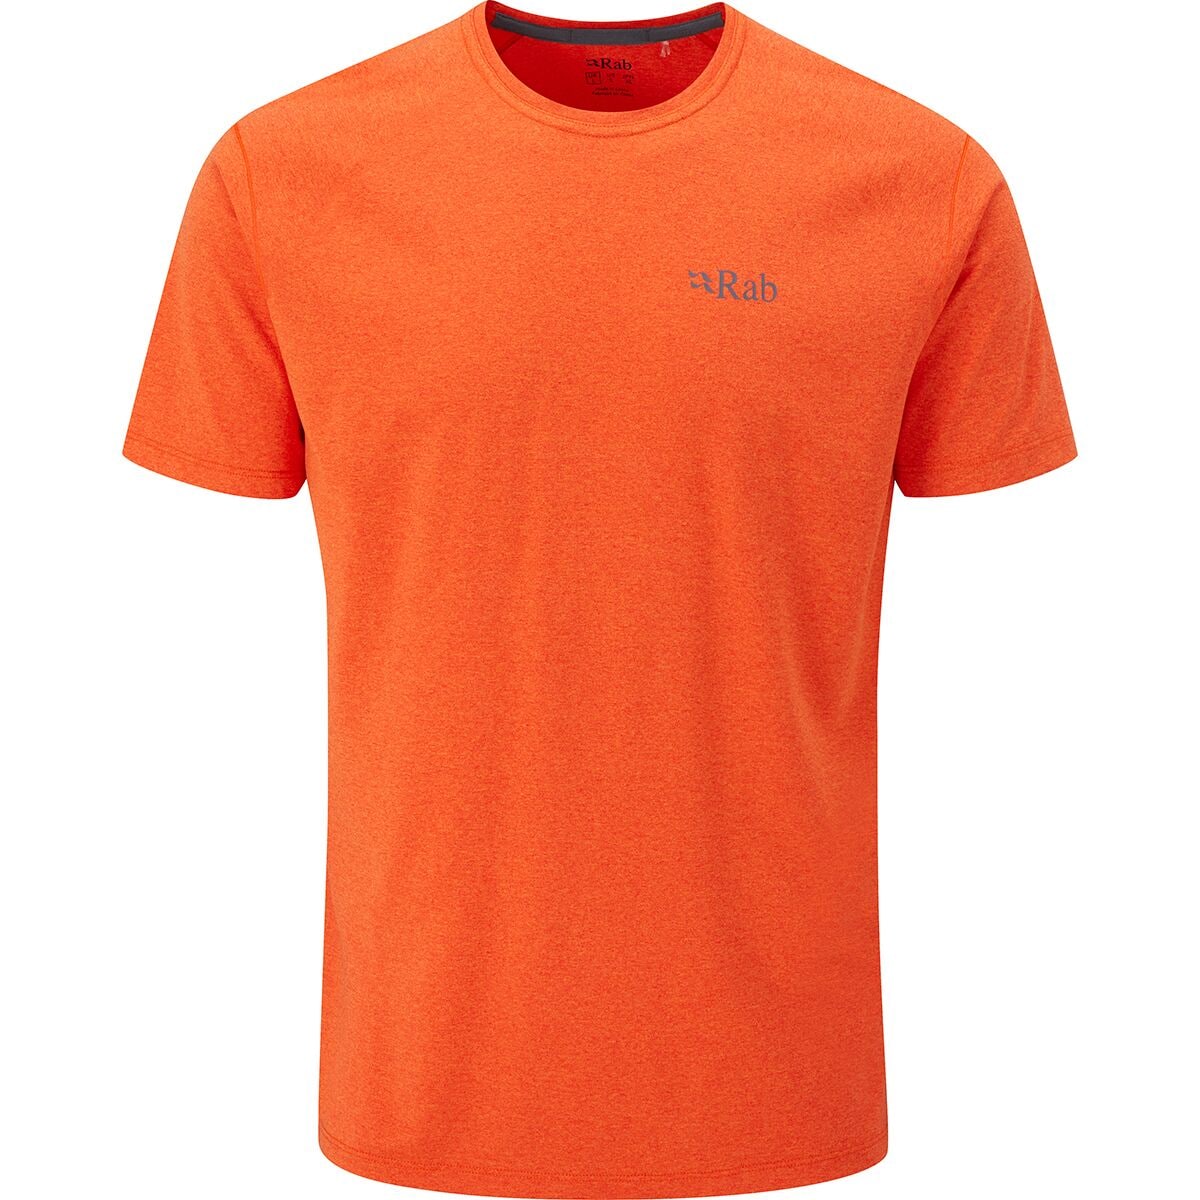 Rab Mantle T-Shirt - Men's - Clothing